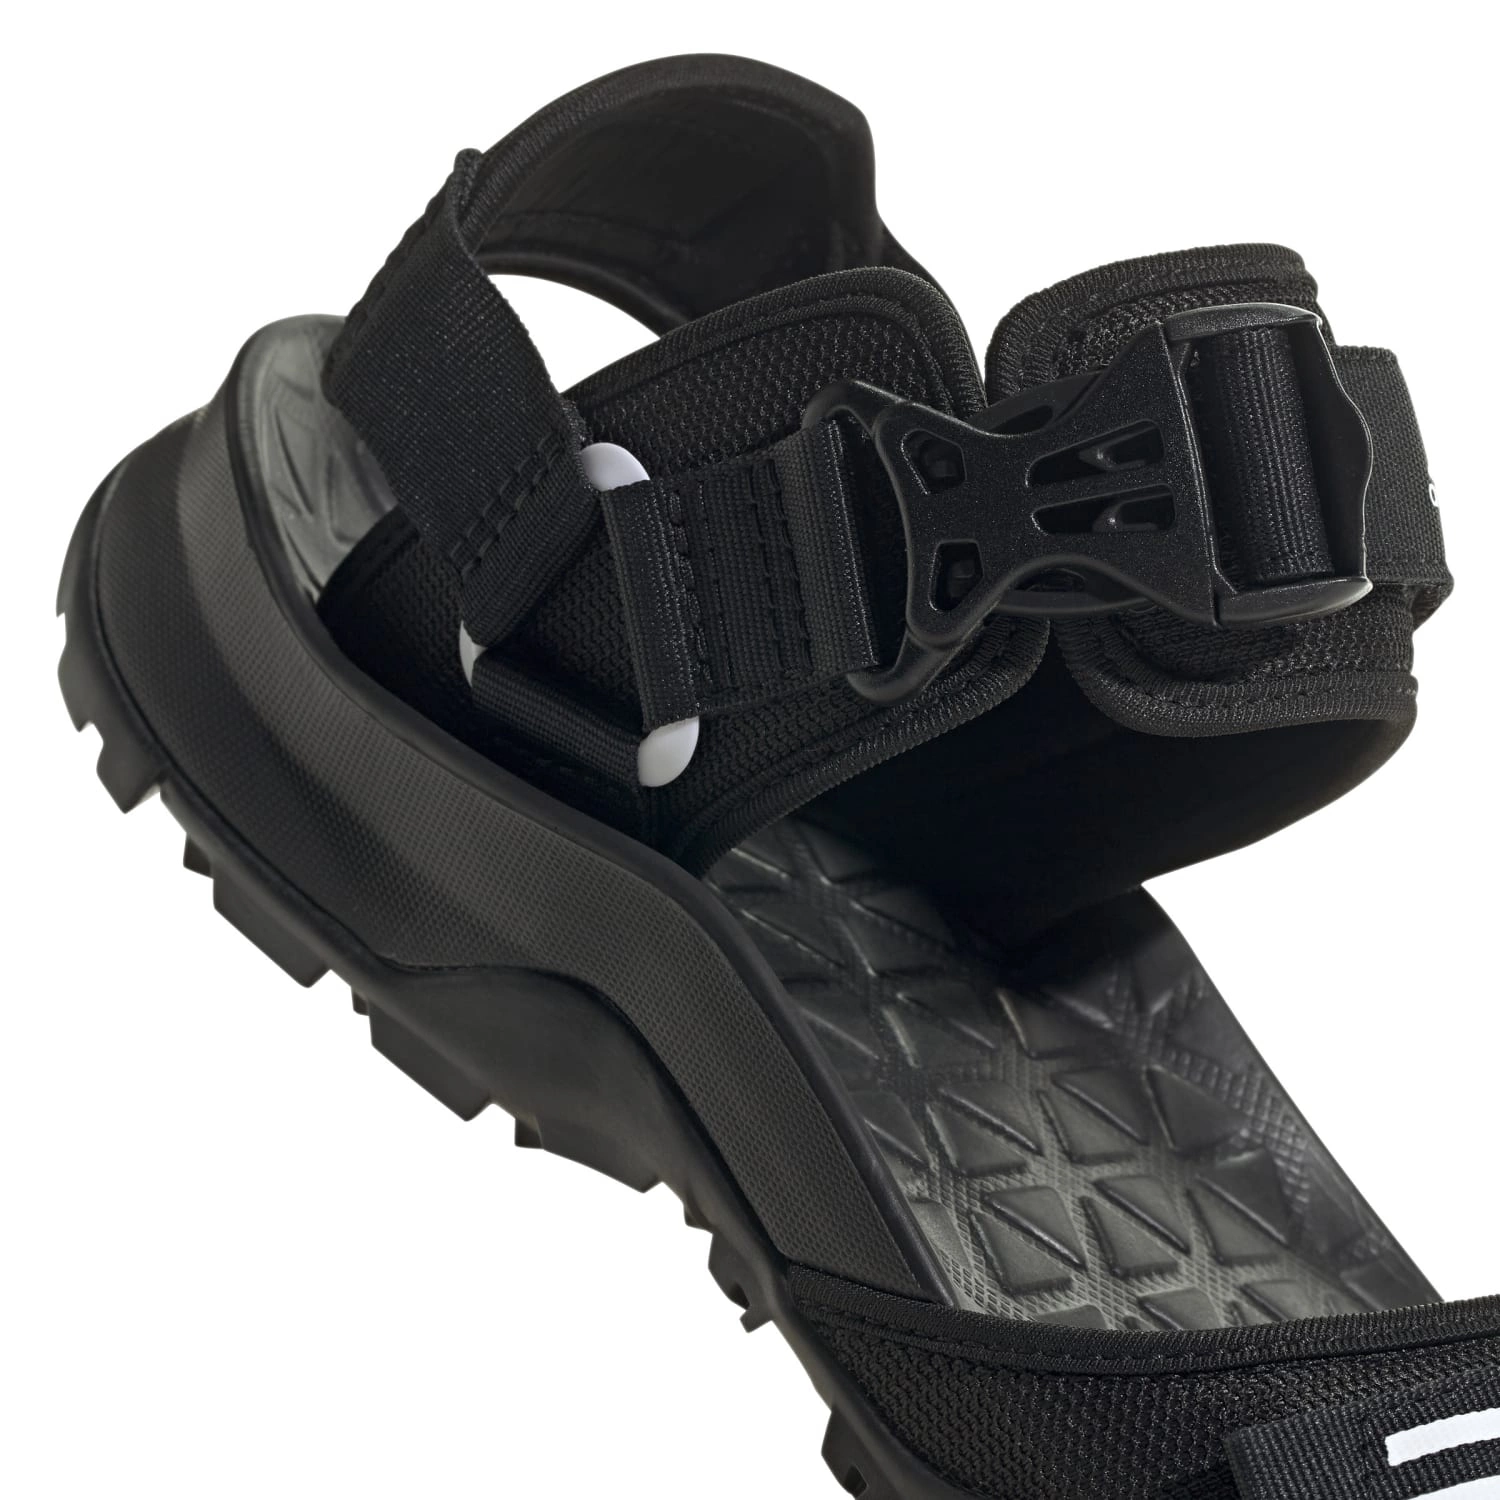 Adidas: Сандалии Adidas Cyprex Ultra Sandal DLX